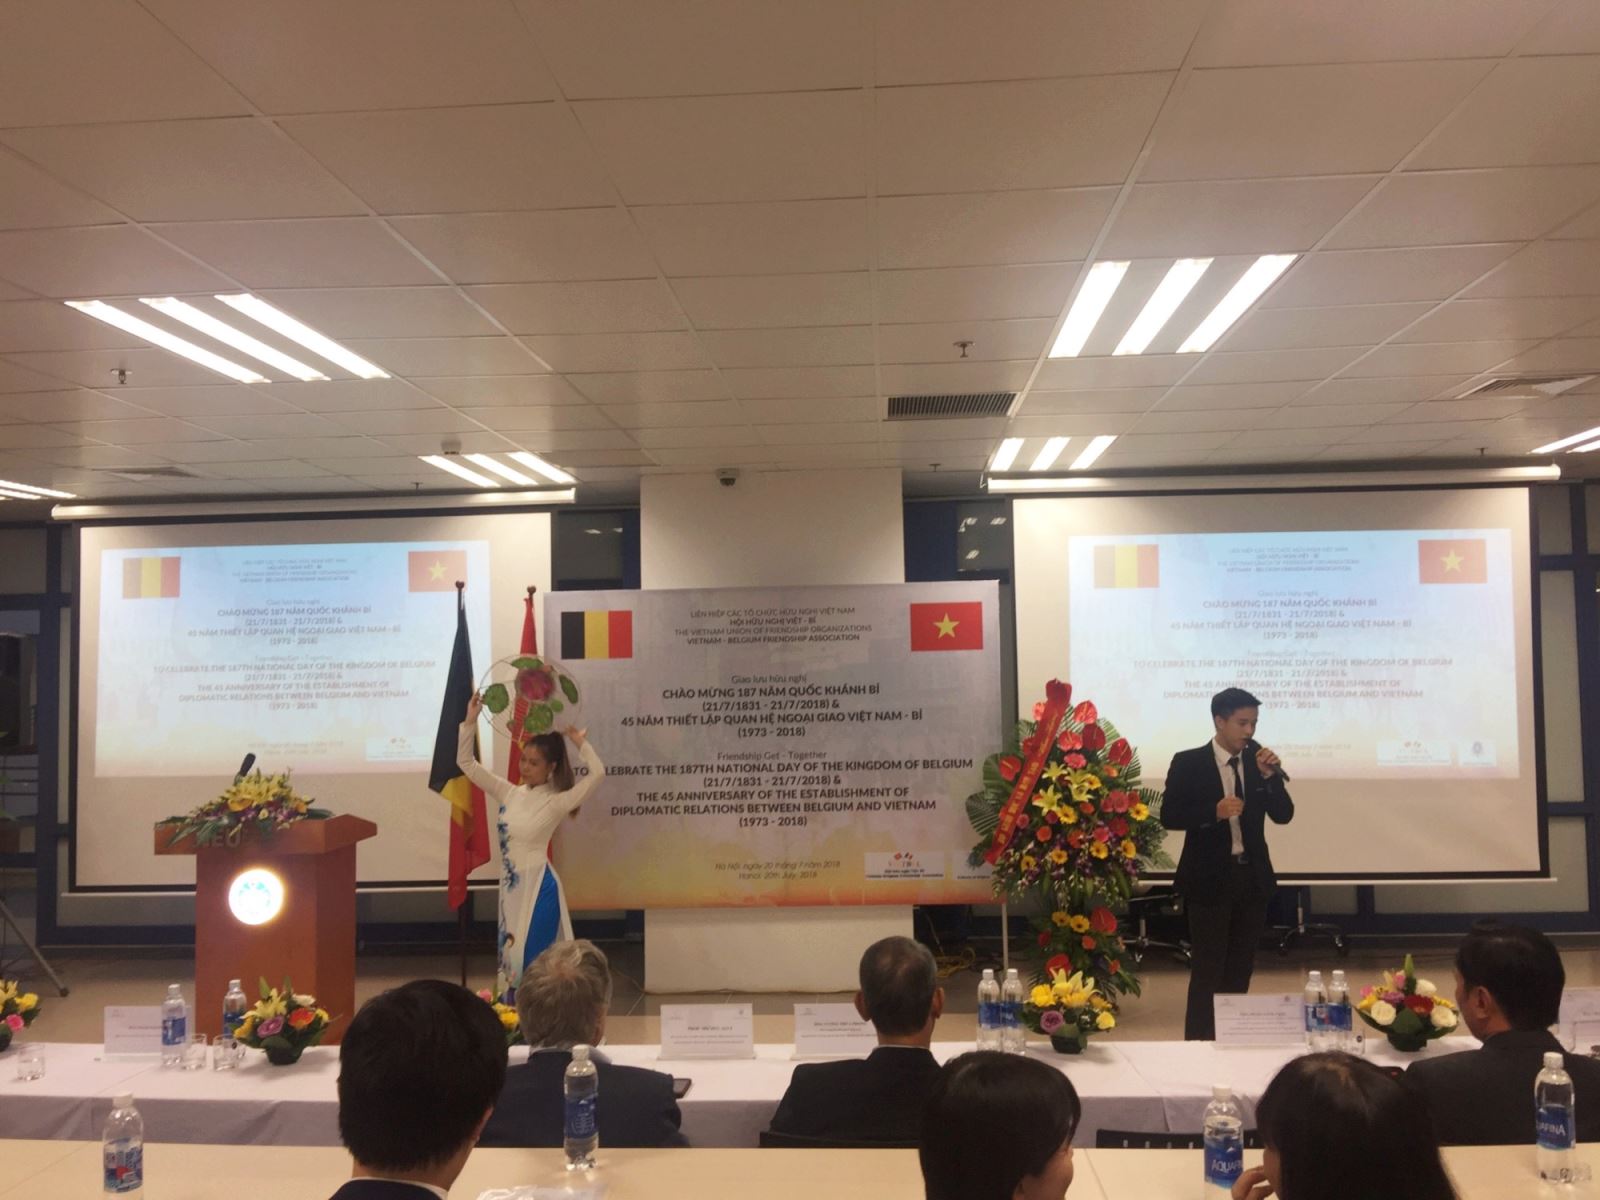 Exchange marks 45 years of Vietnam-Belgium relations